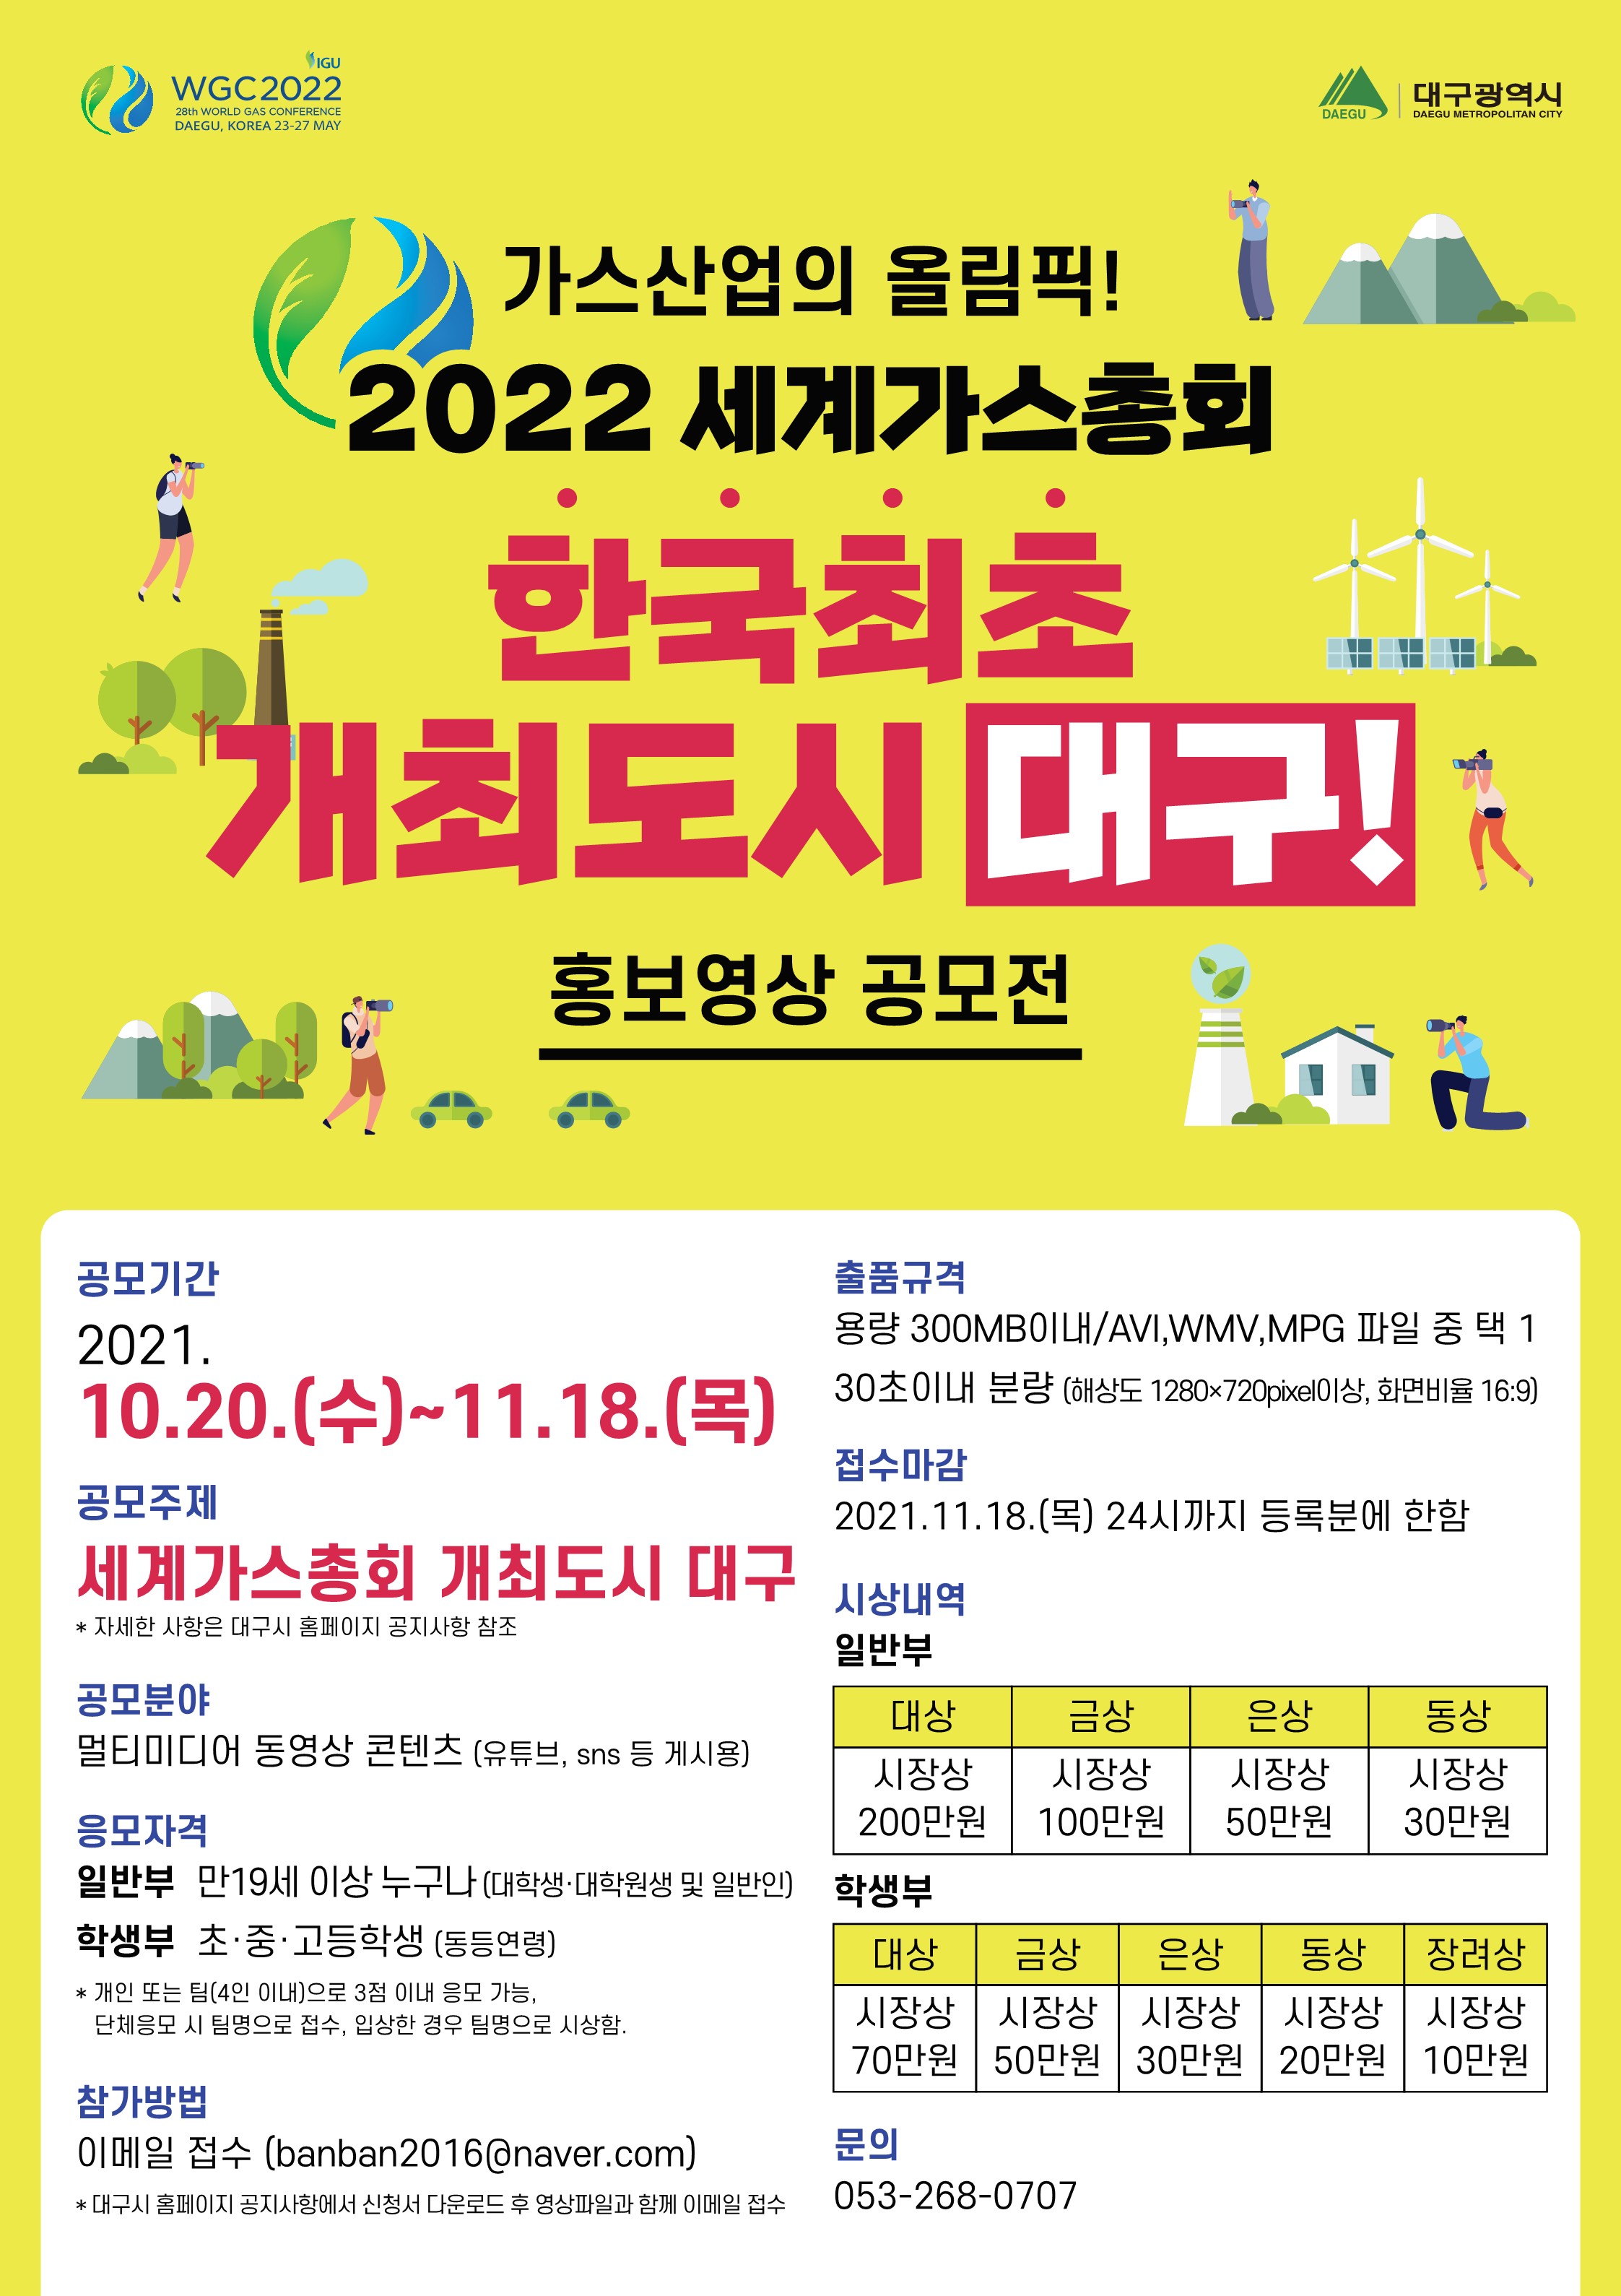 [대구광역시]「2022대구세계가스총회 홍보영상 공모전」 안내 4